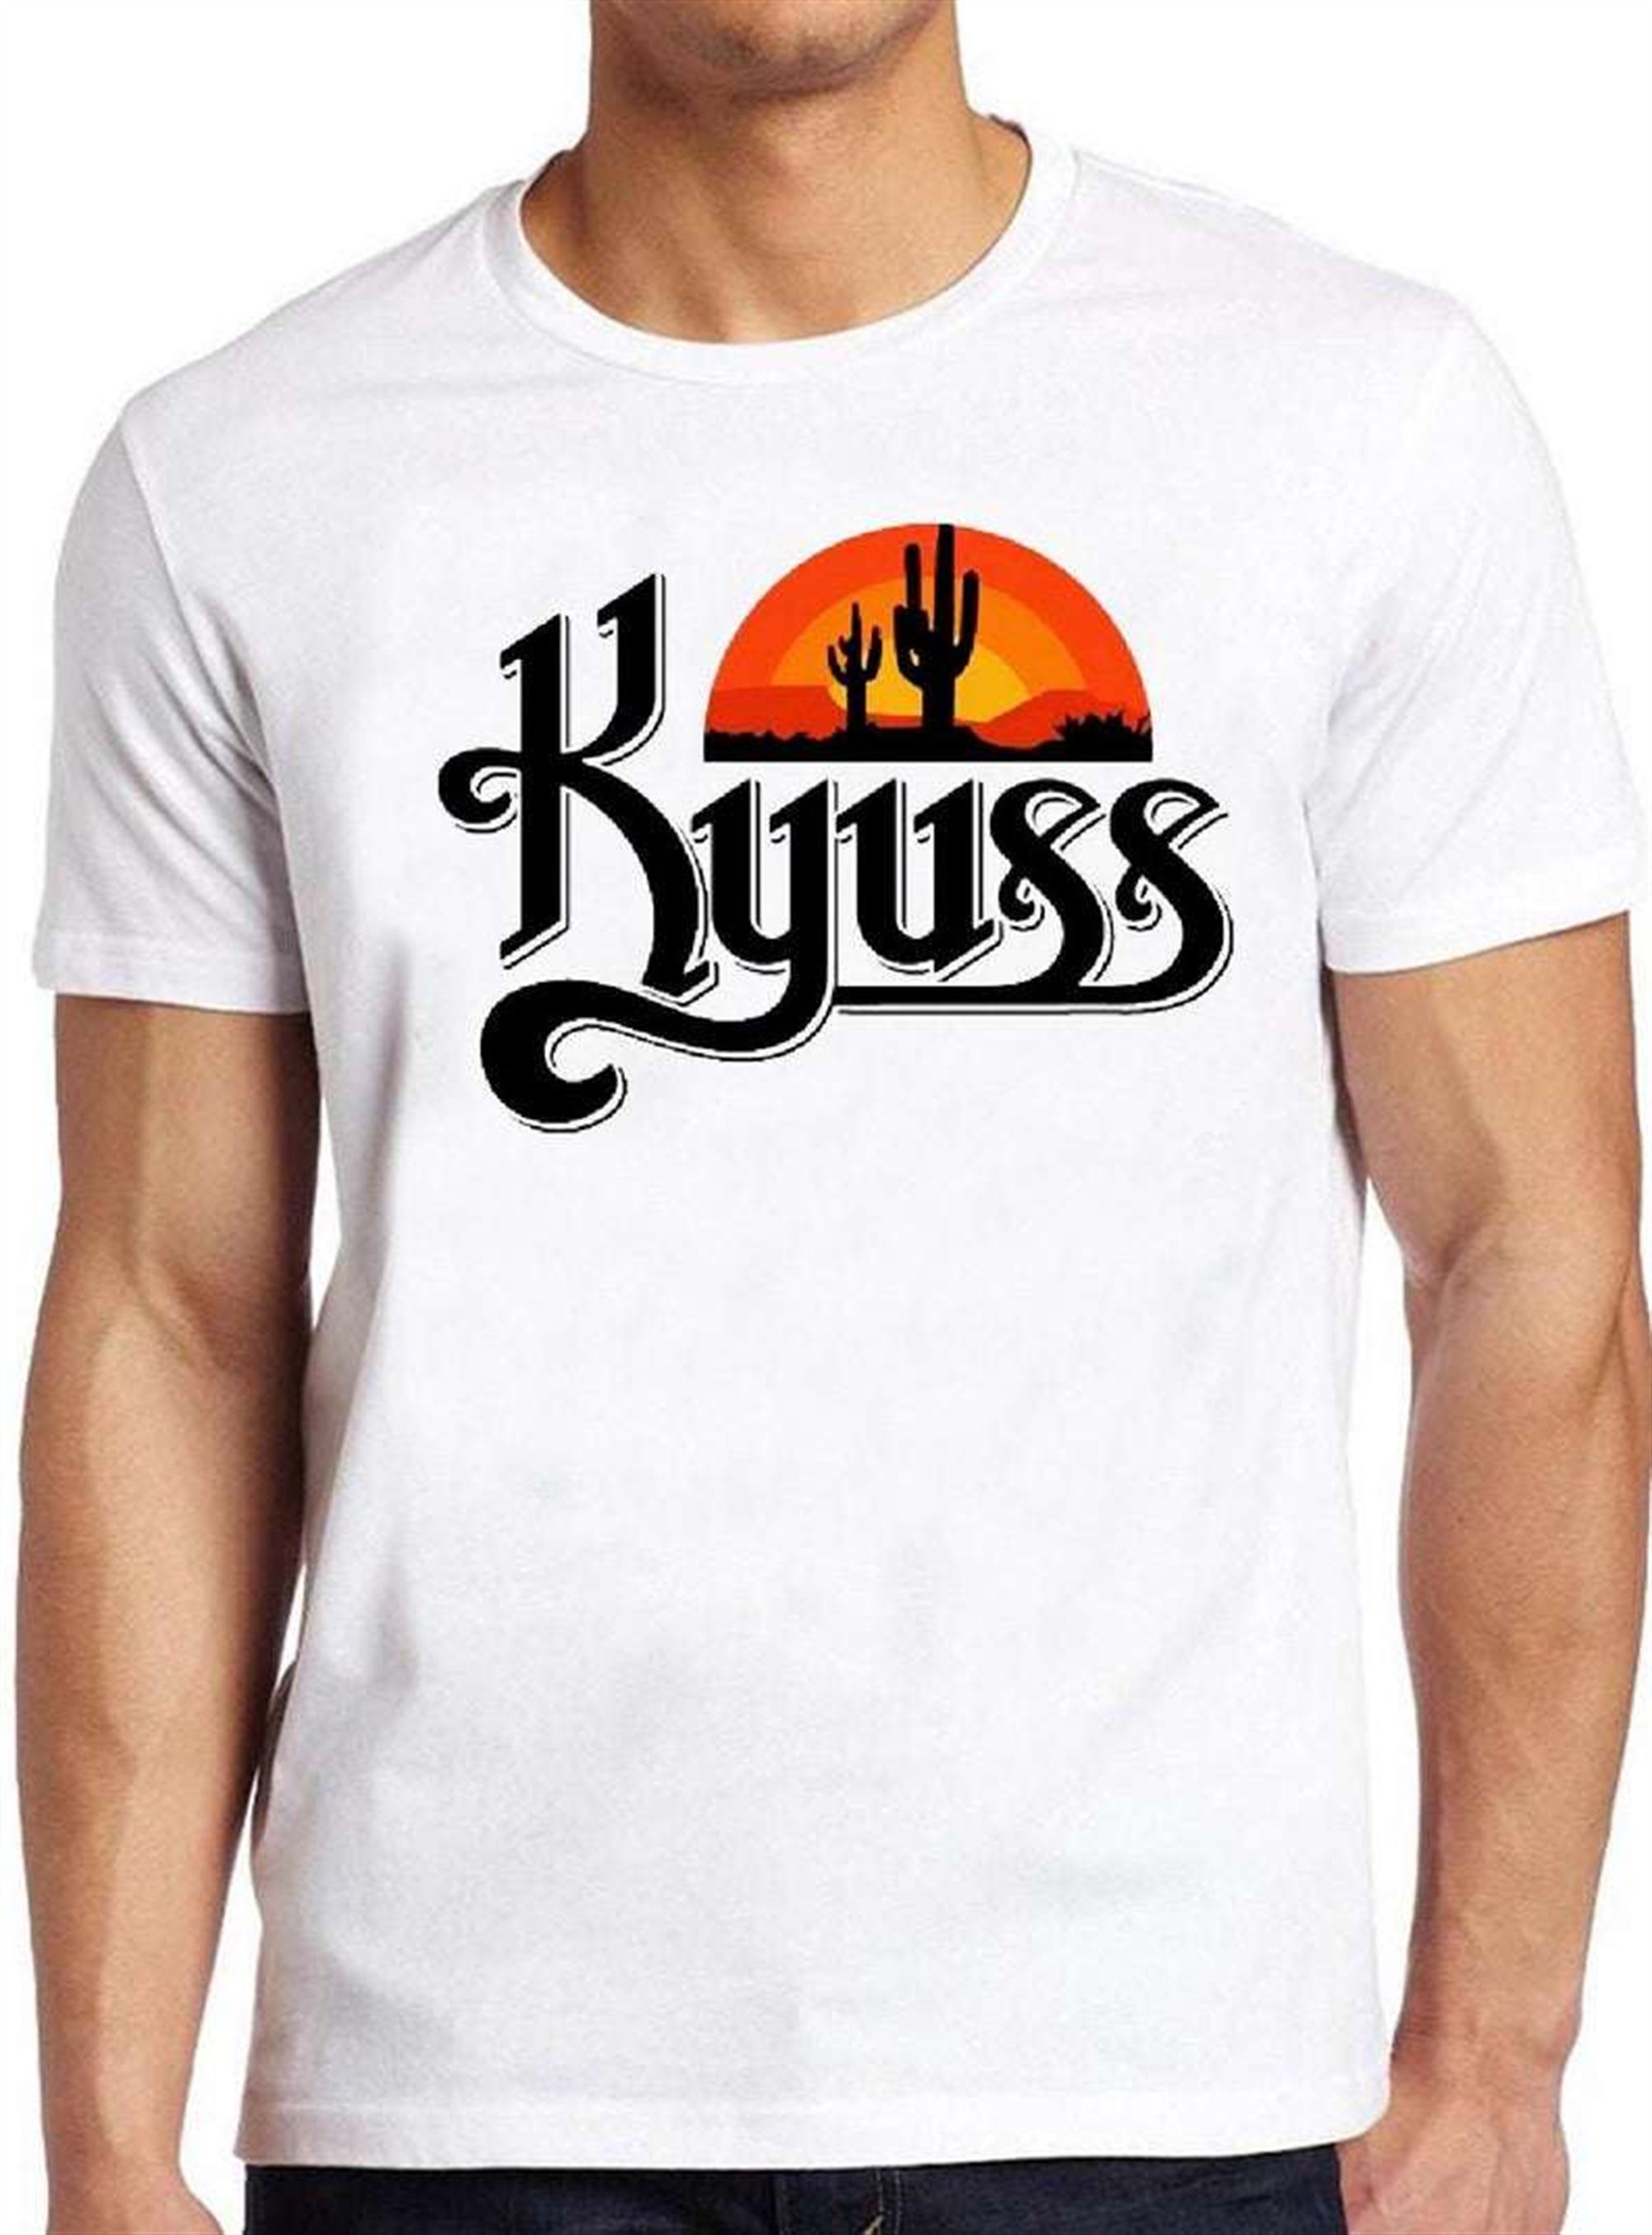 Kyuss Unisex T Shirt Size Up To 5xl